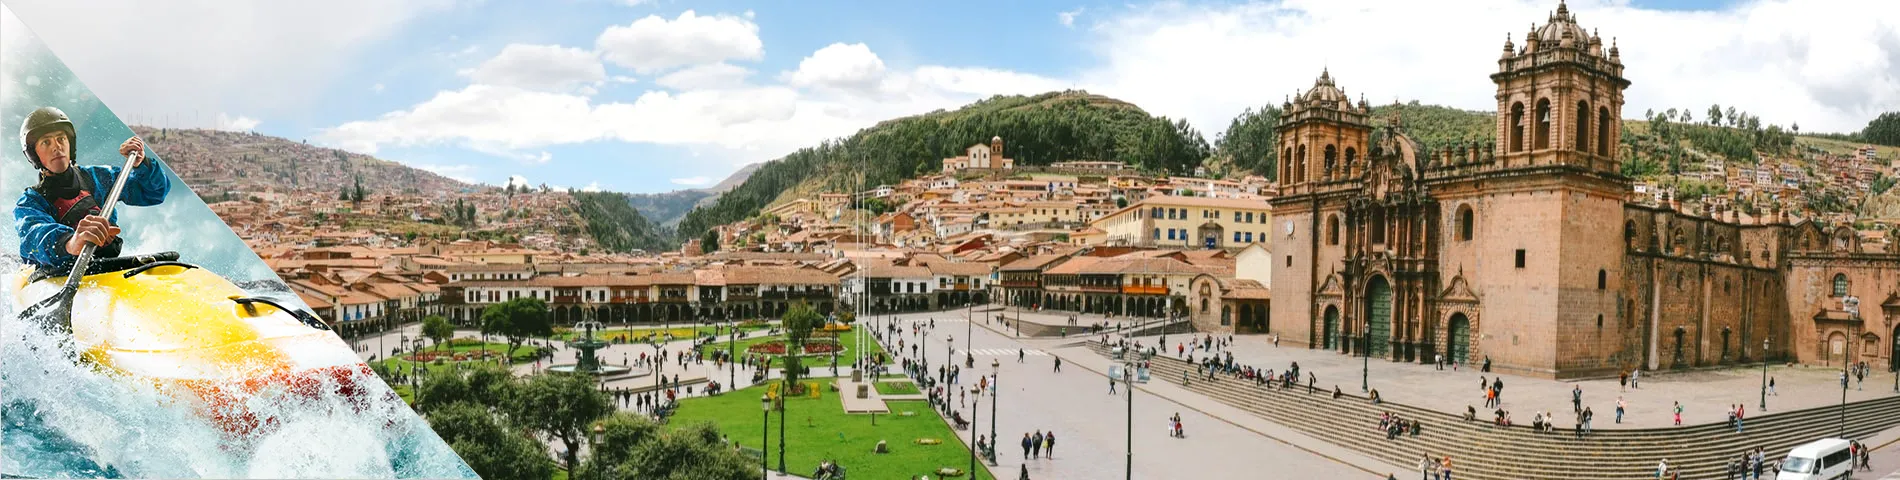 Cuzco - Spaans  & avontuurlijke sporten